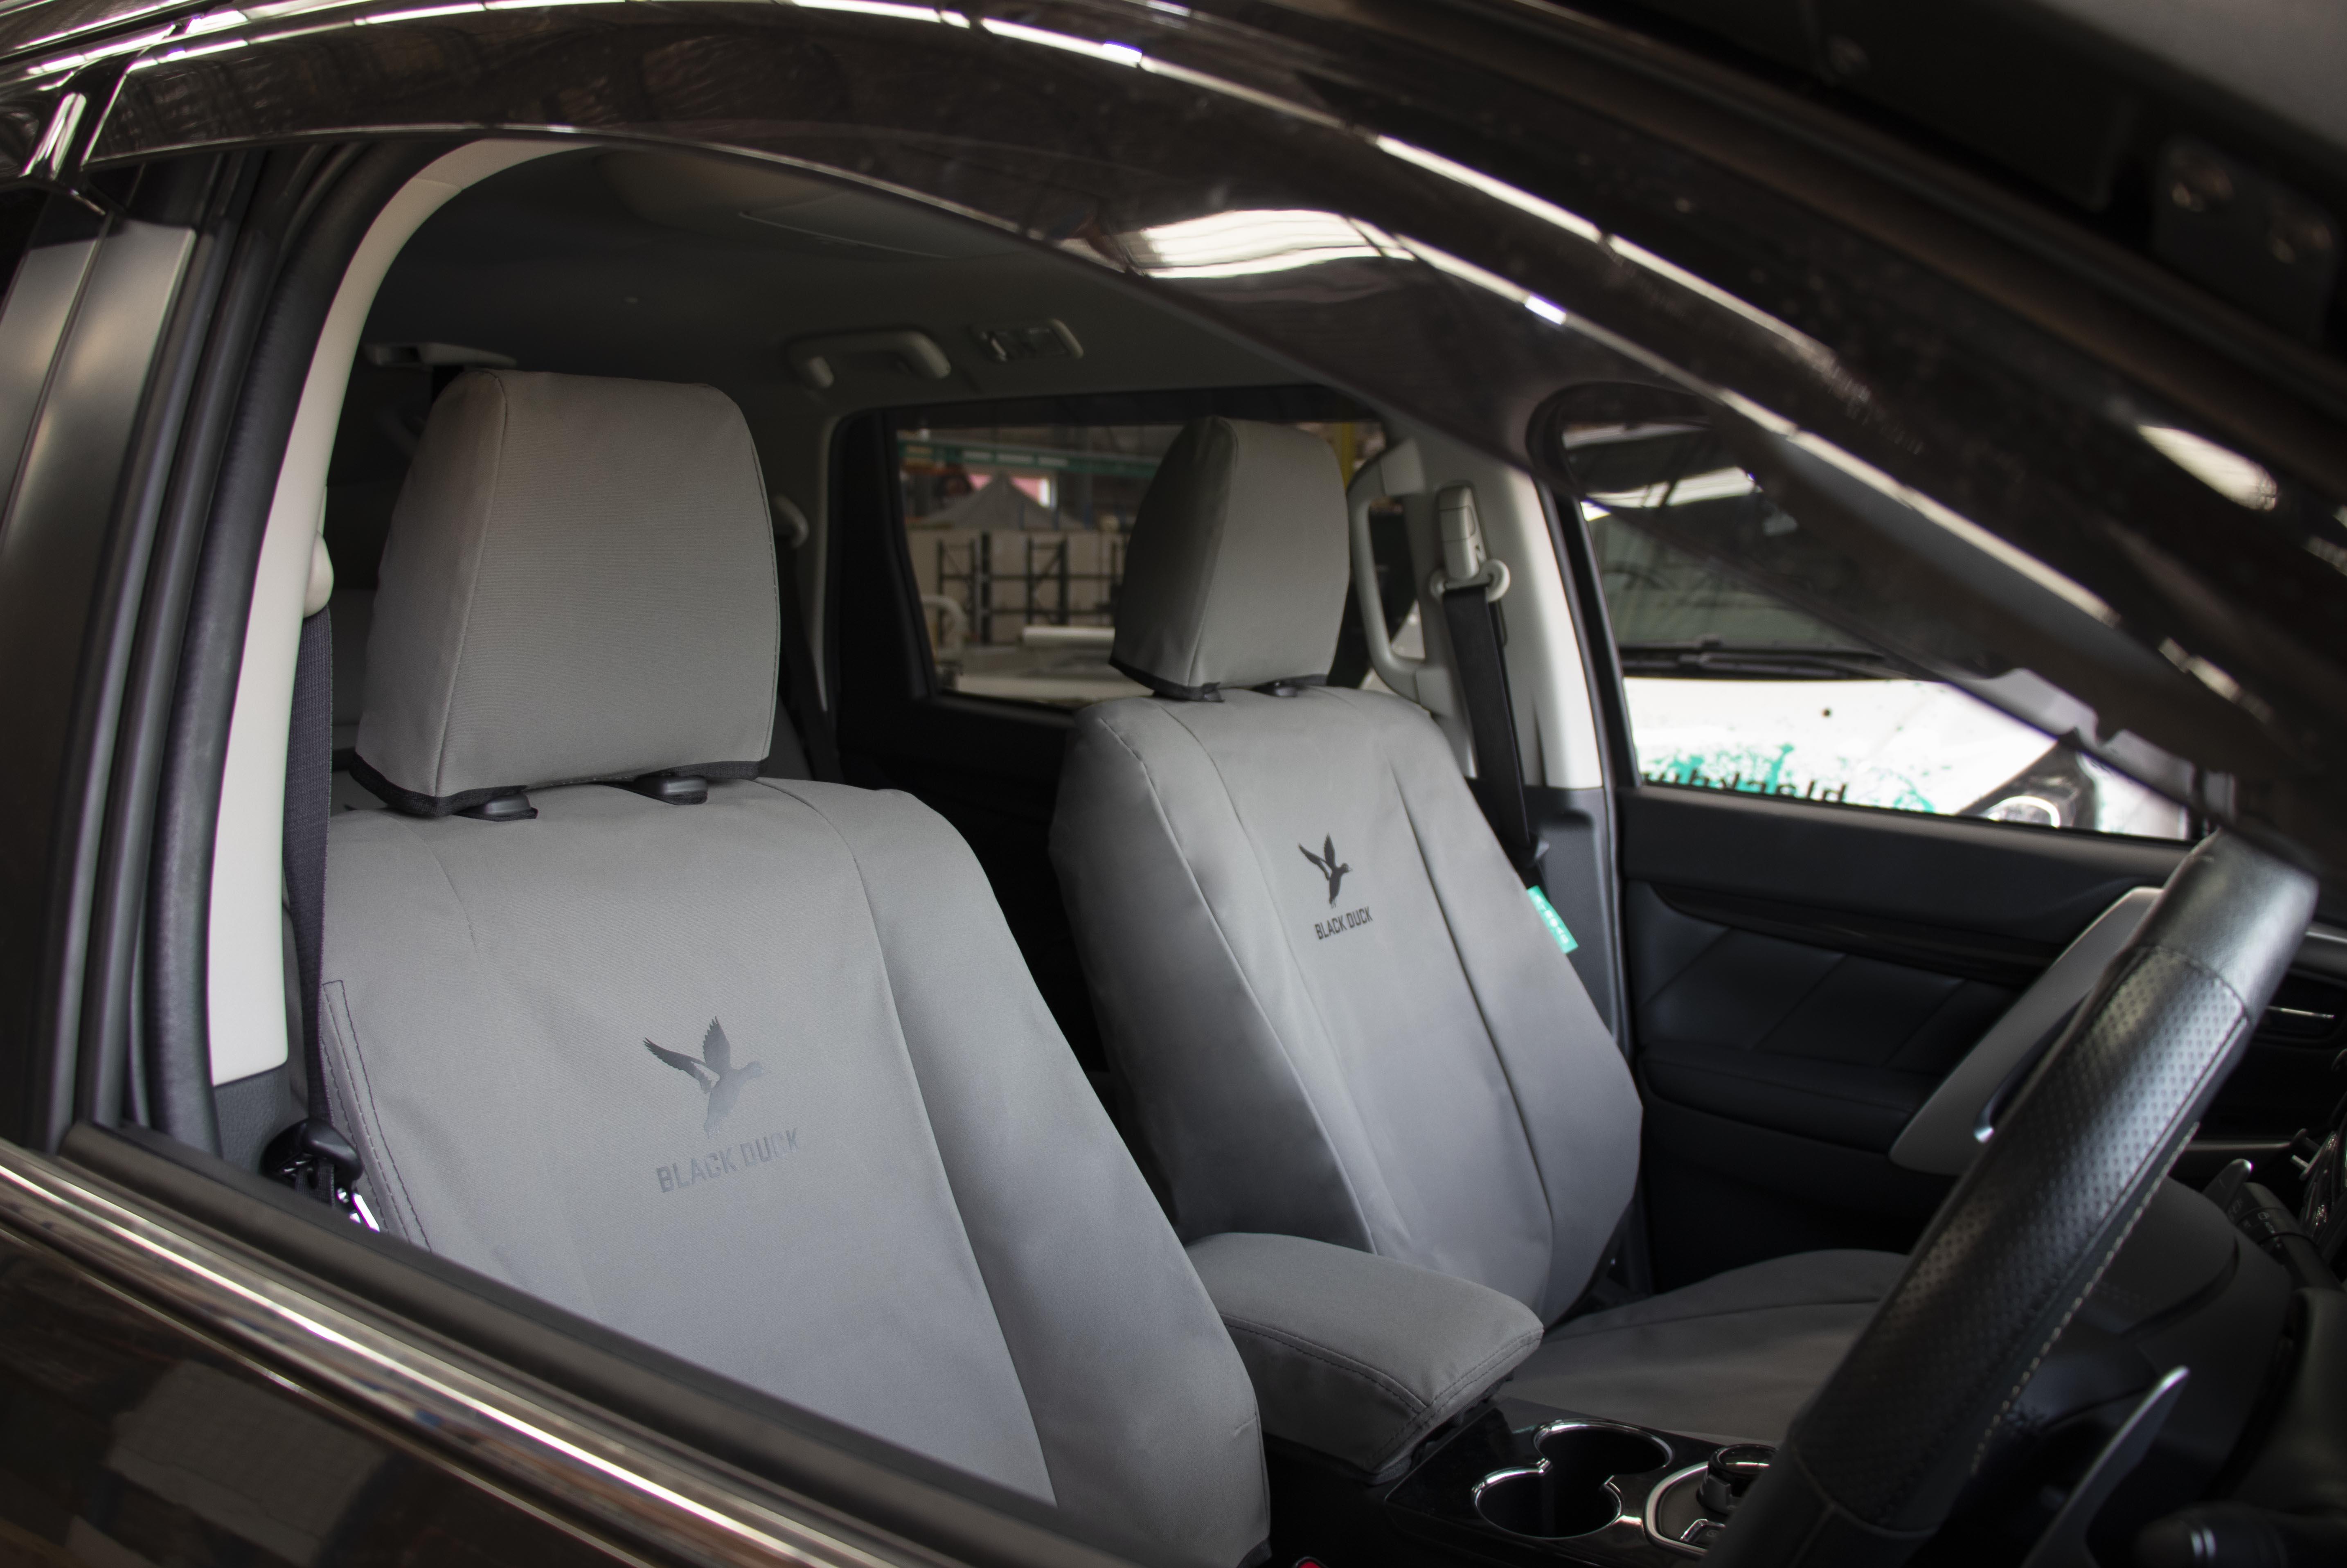 Mitsubishi Pajero seat covers